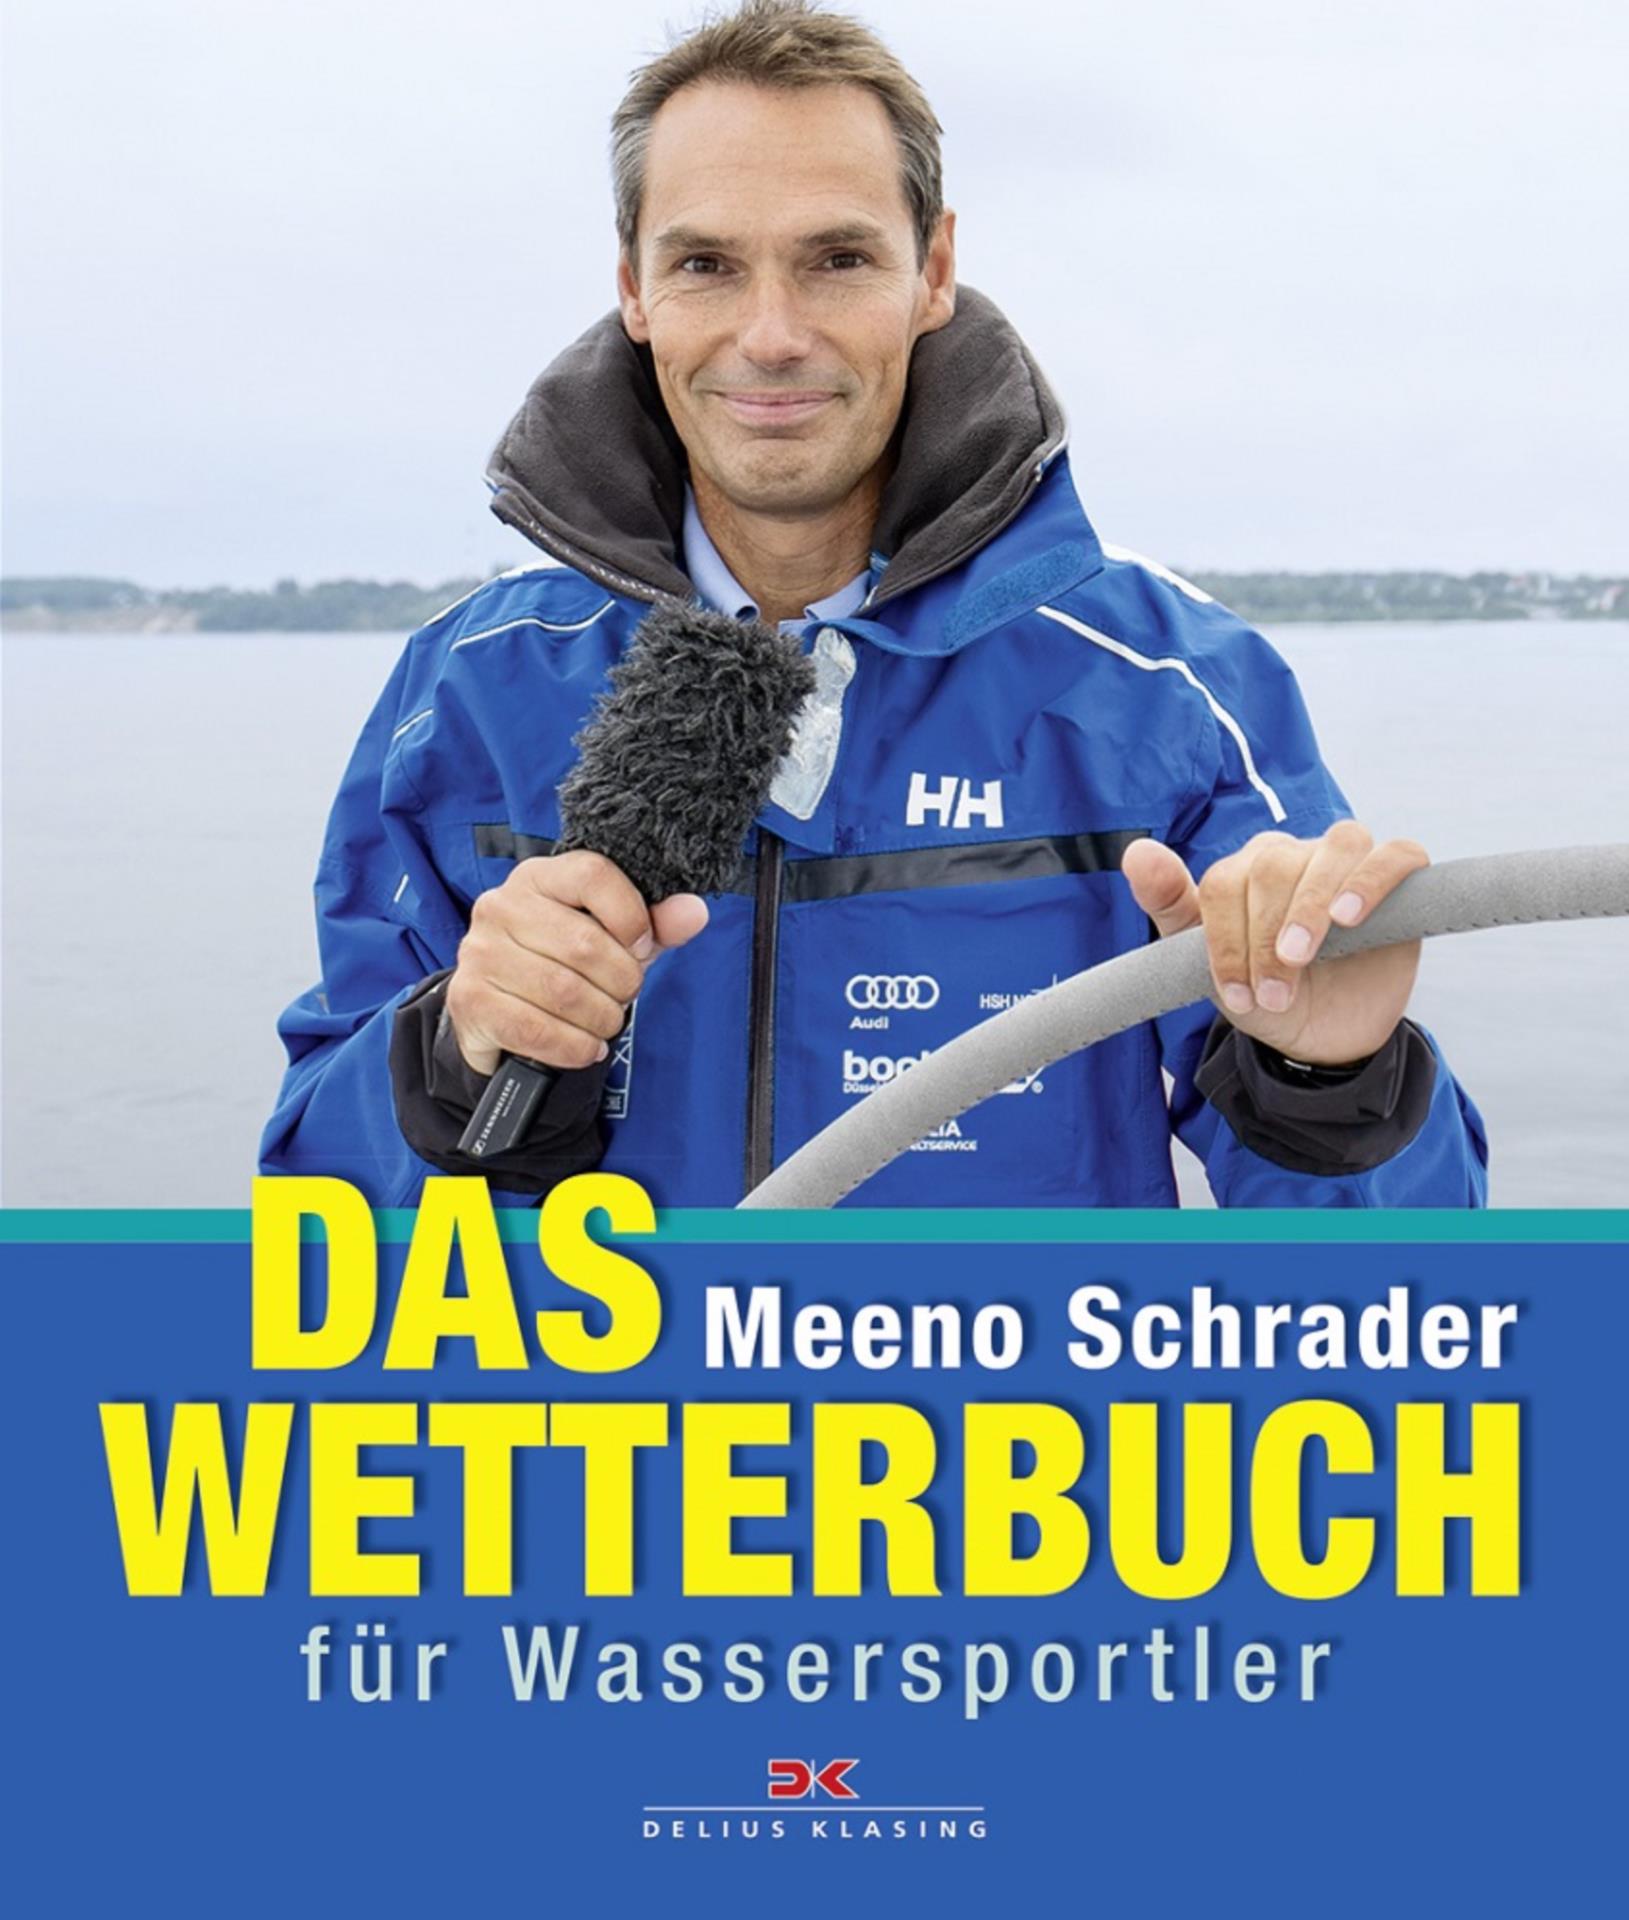 Das Wetterbuch für Wassersportler - Meeno Schrader